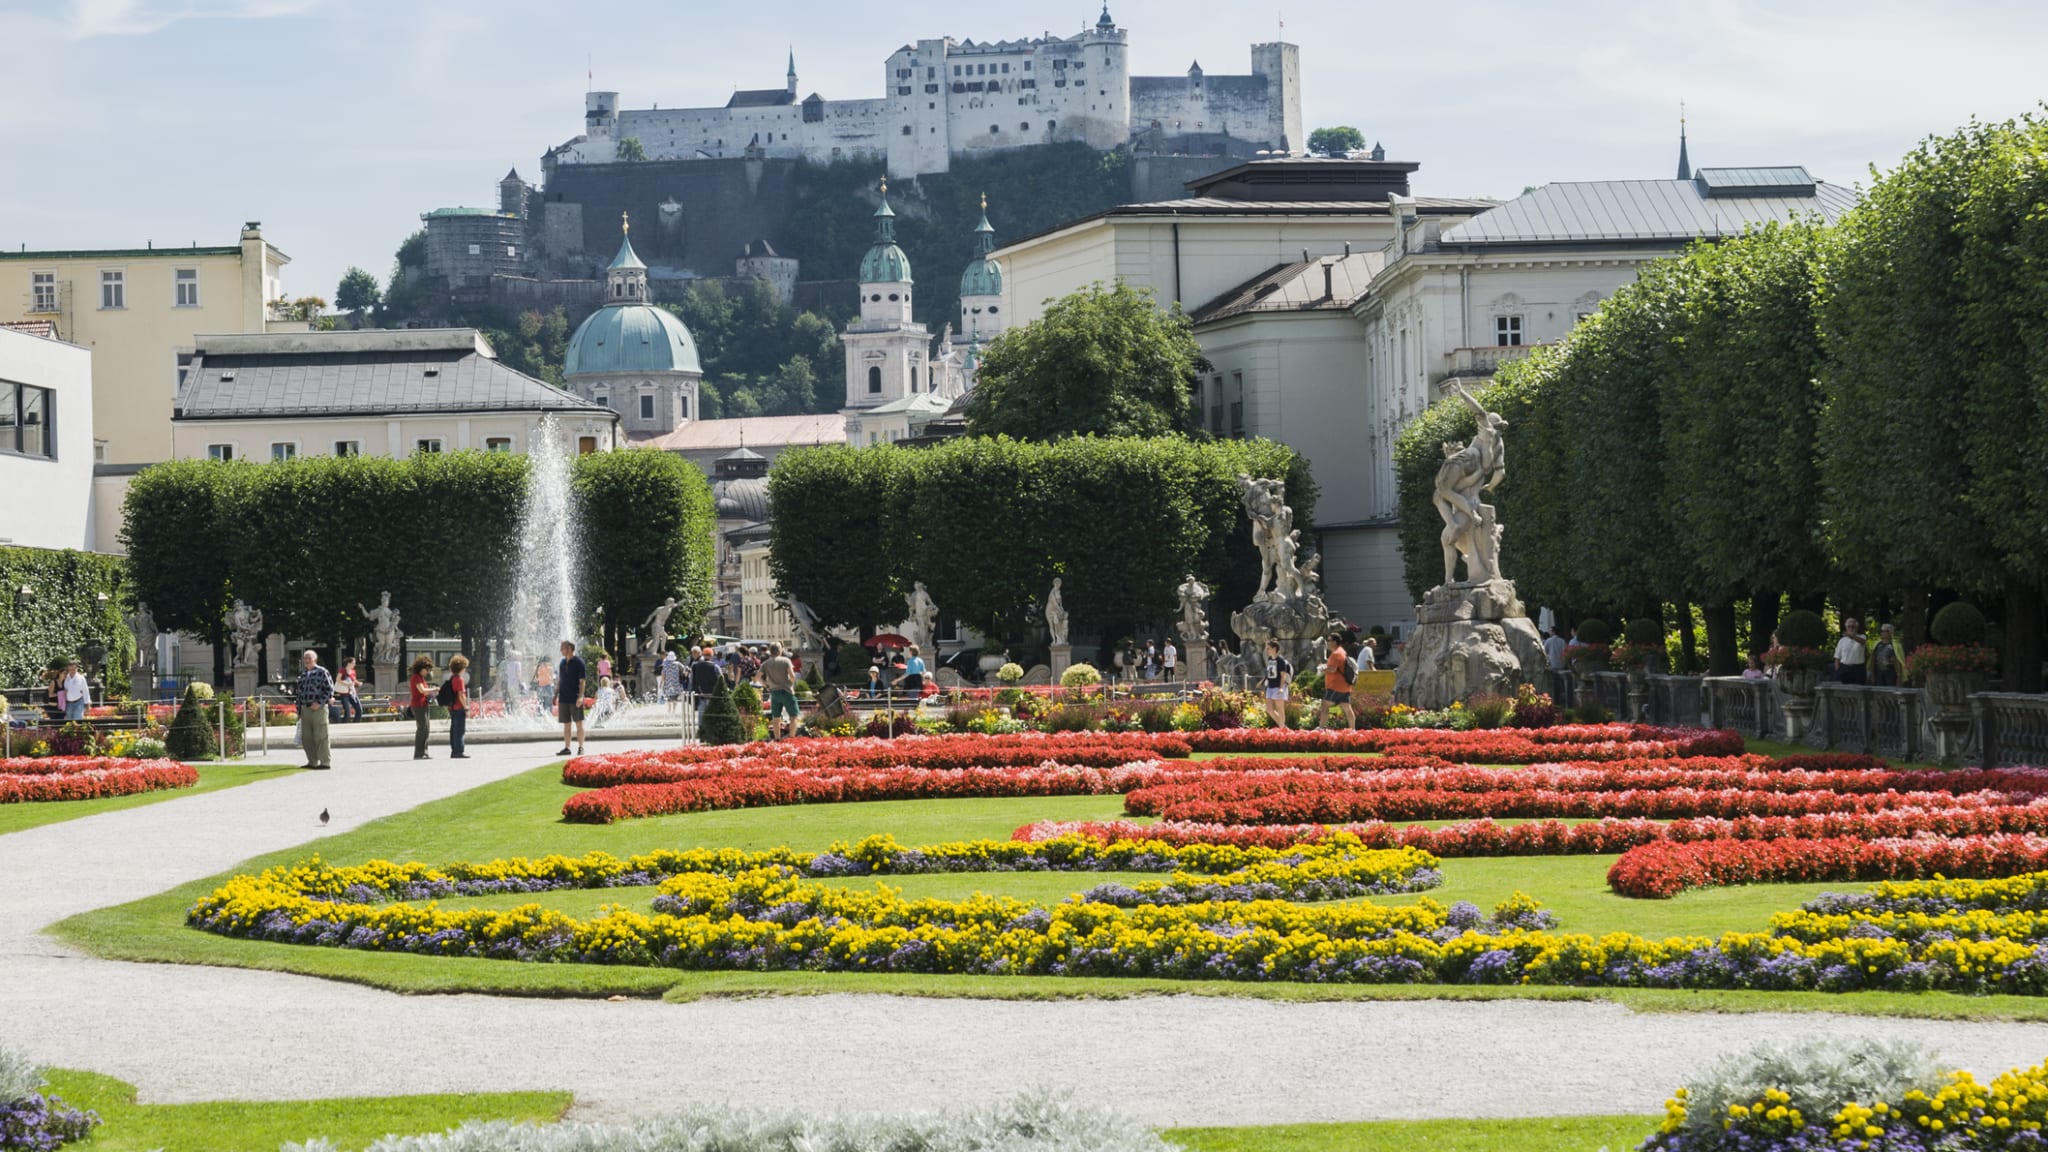 Mirabellgarten in Salzburg, Österreich ©John Harper/Stone via Getty Images